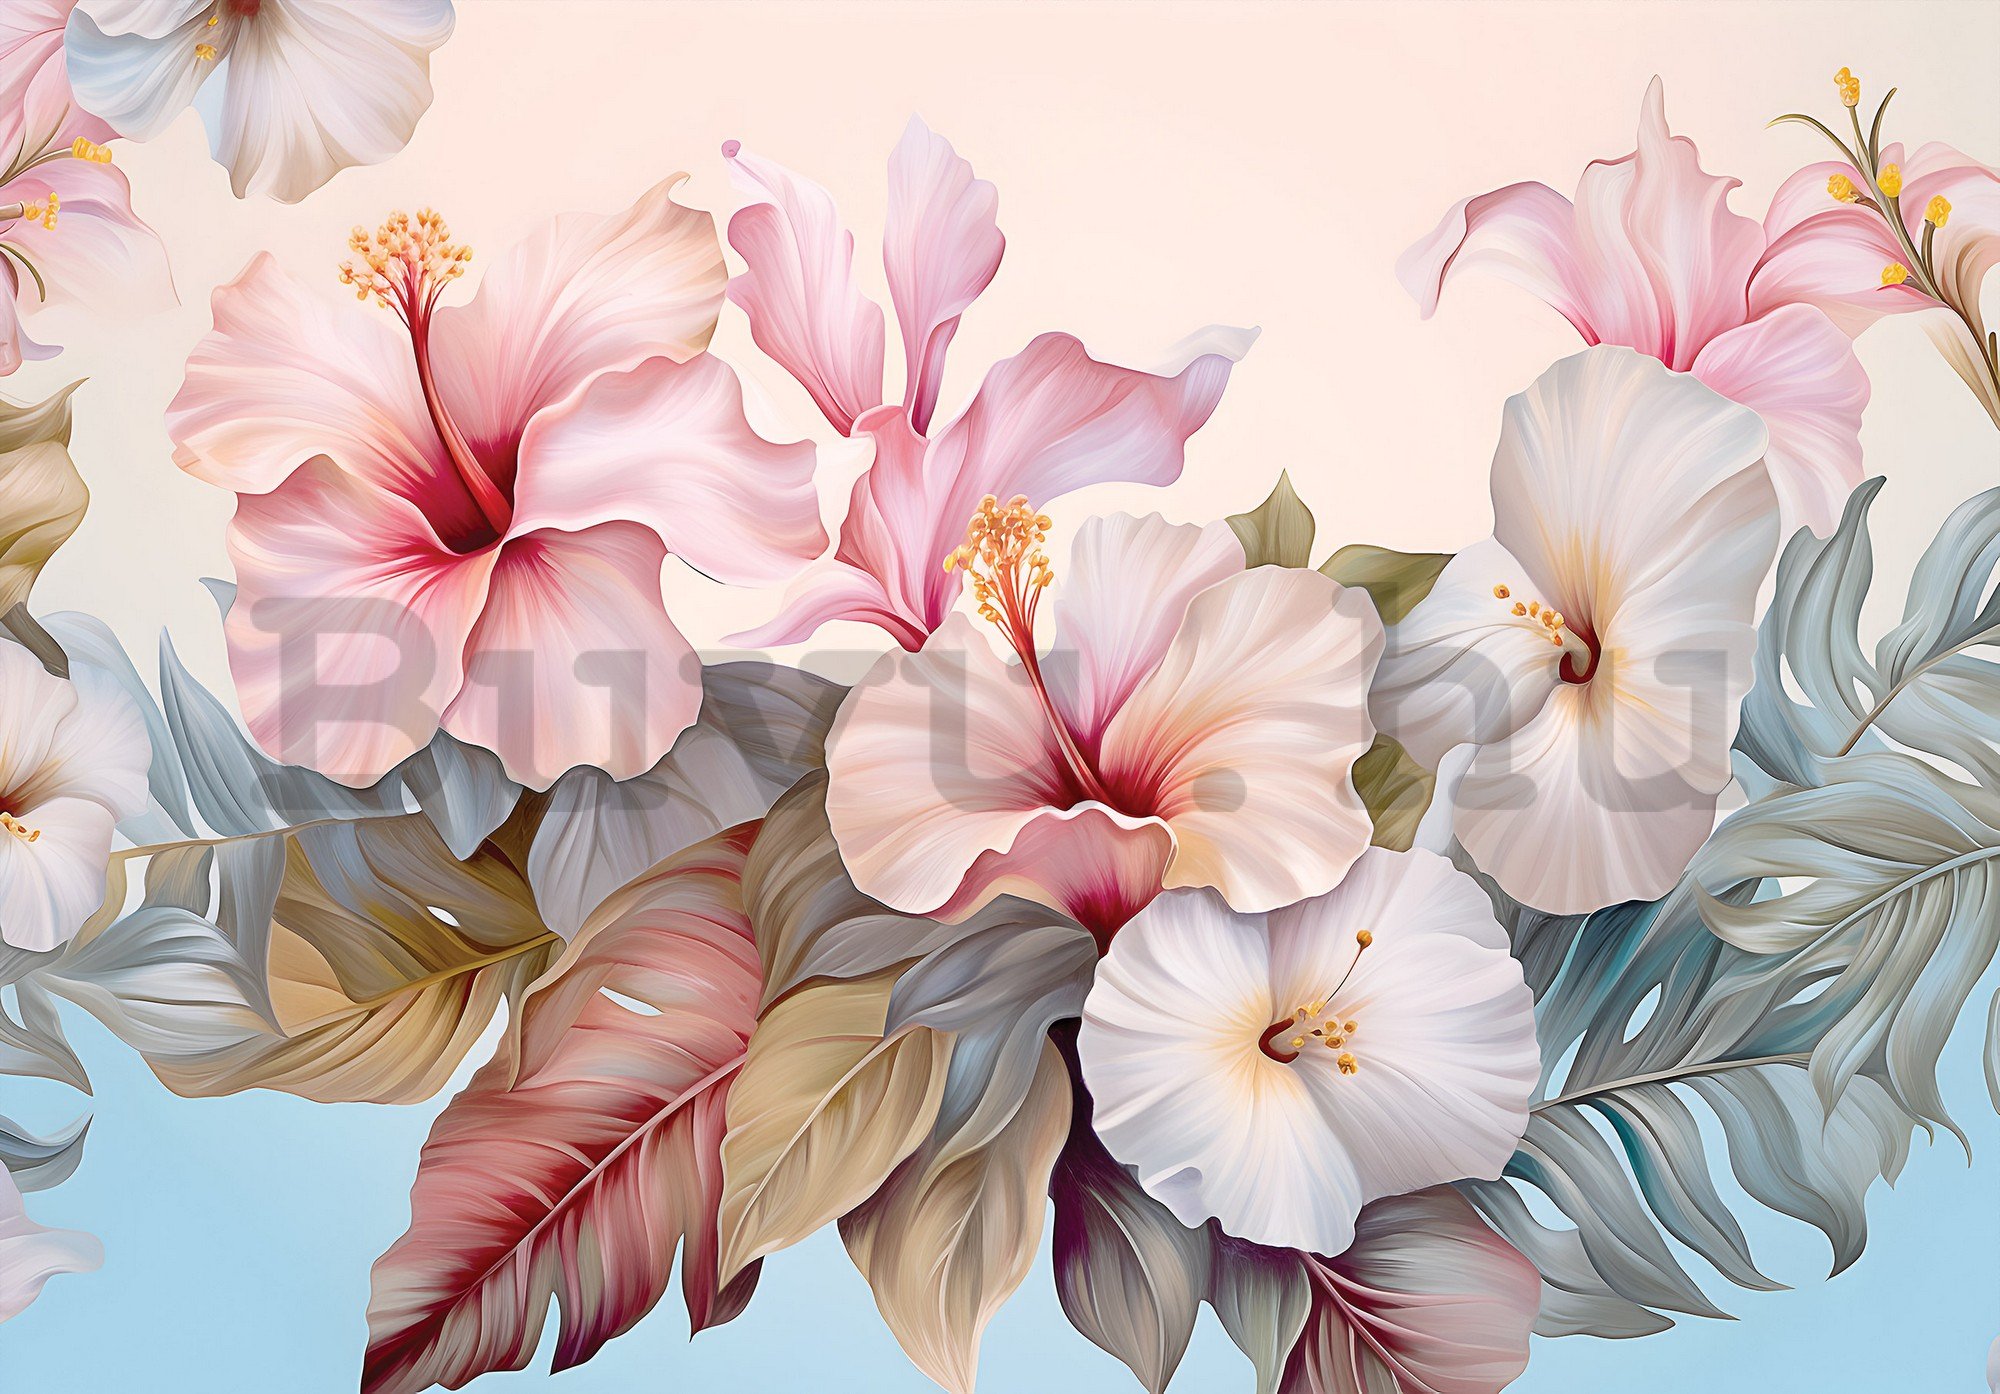 Vlies fotótapéta: Nature flowers hibiscus painting - 254x184 cm